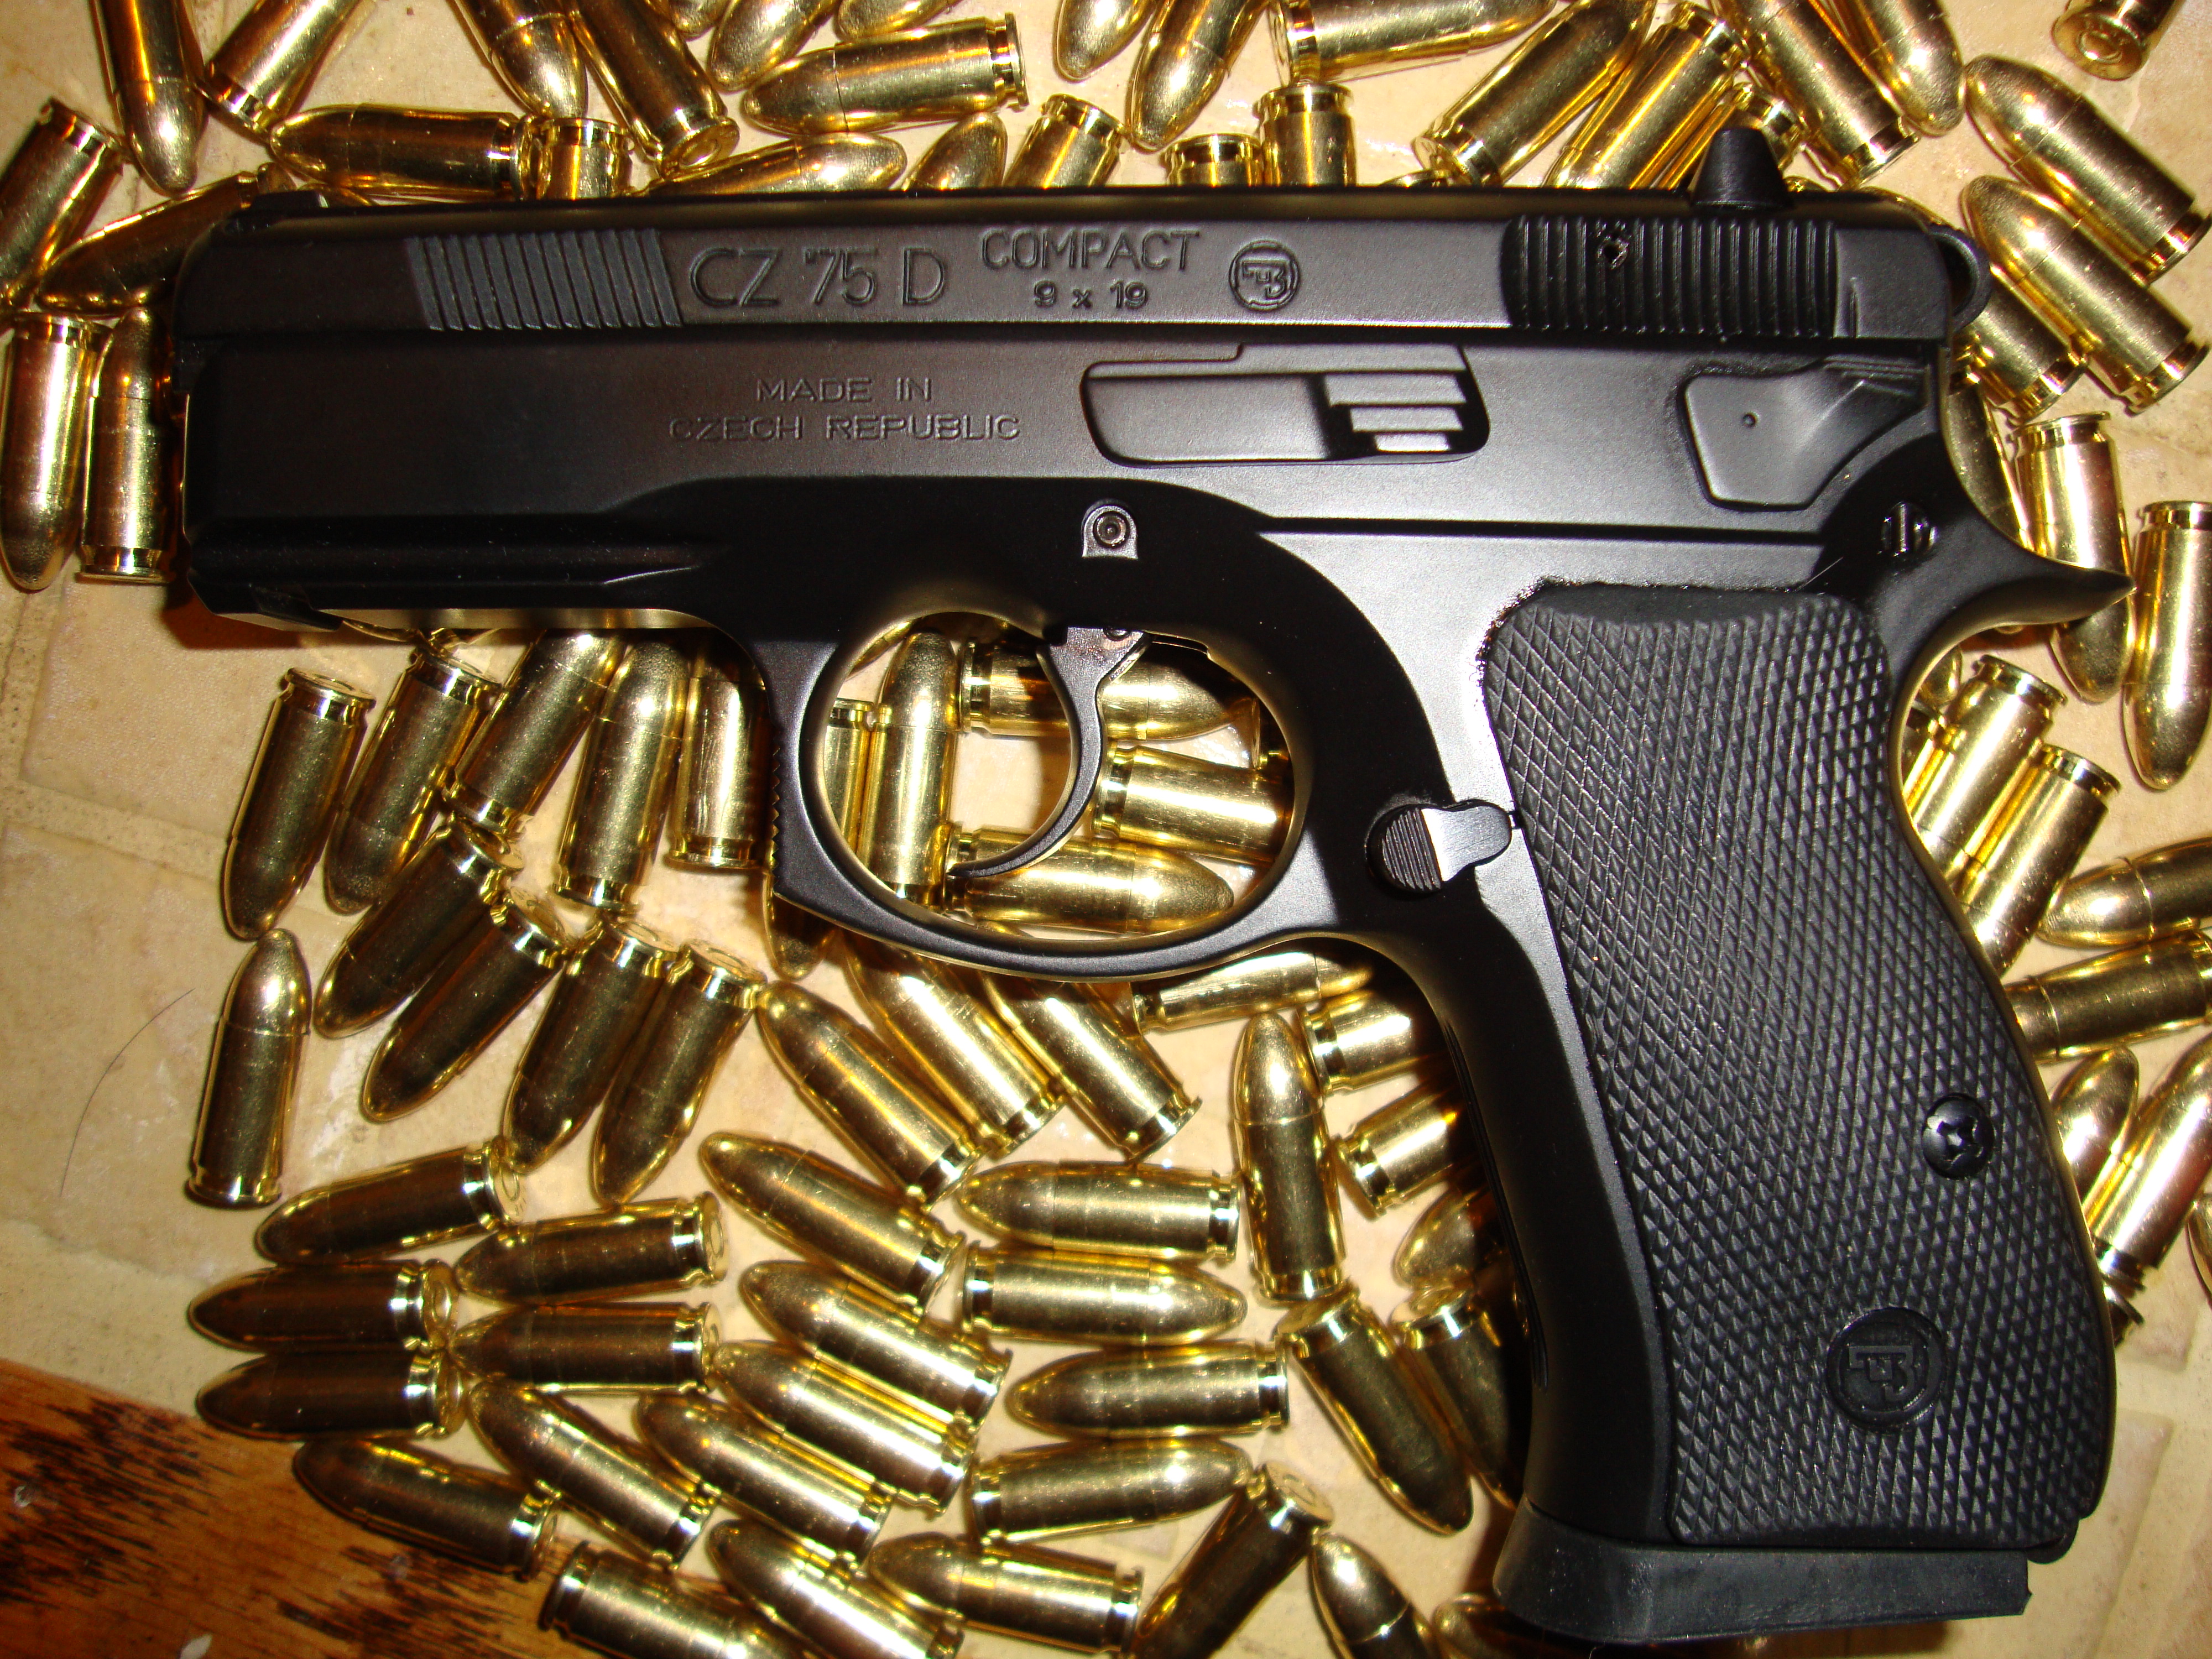 pistols, guns, hands, weapons, ammunition, handguns, CZ-75 - desktop wallpaper